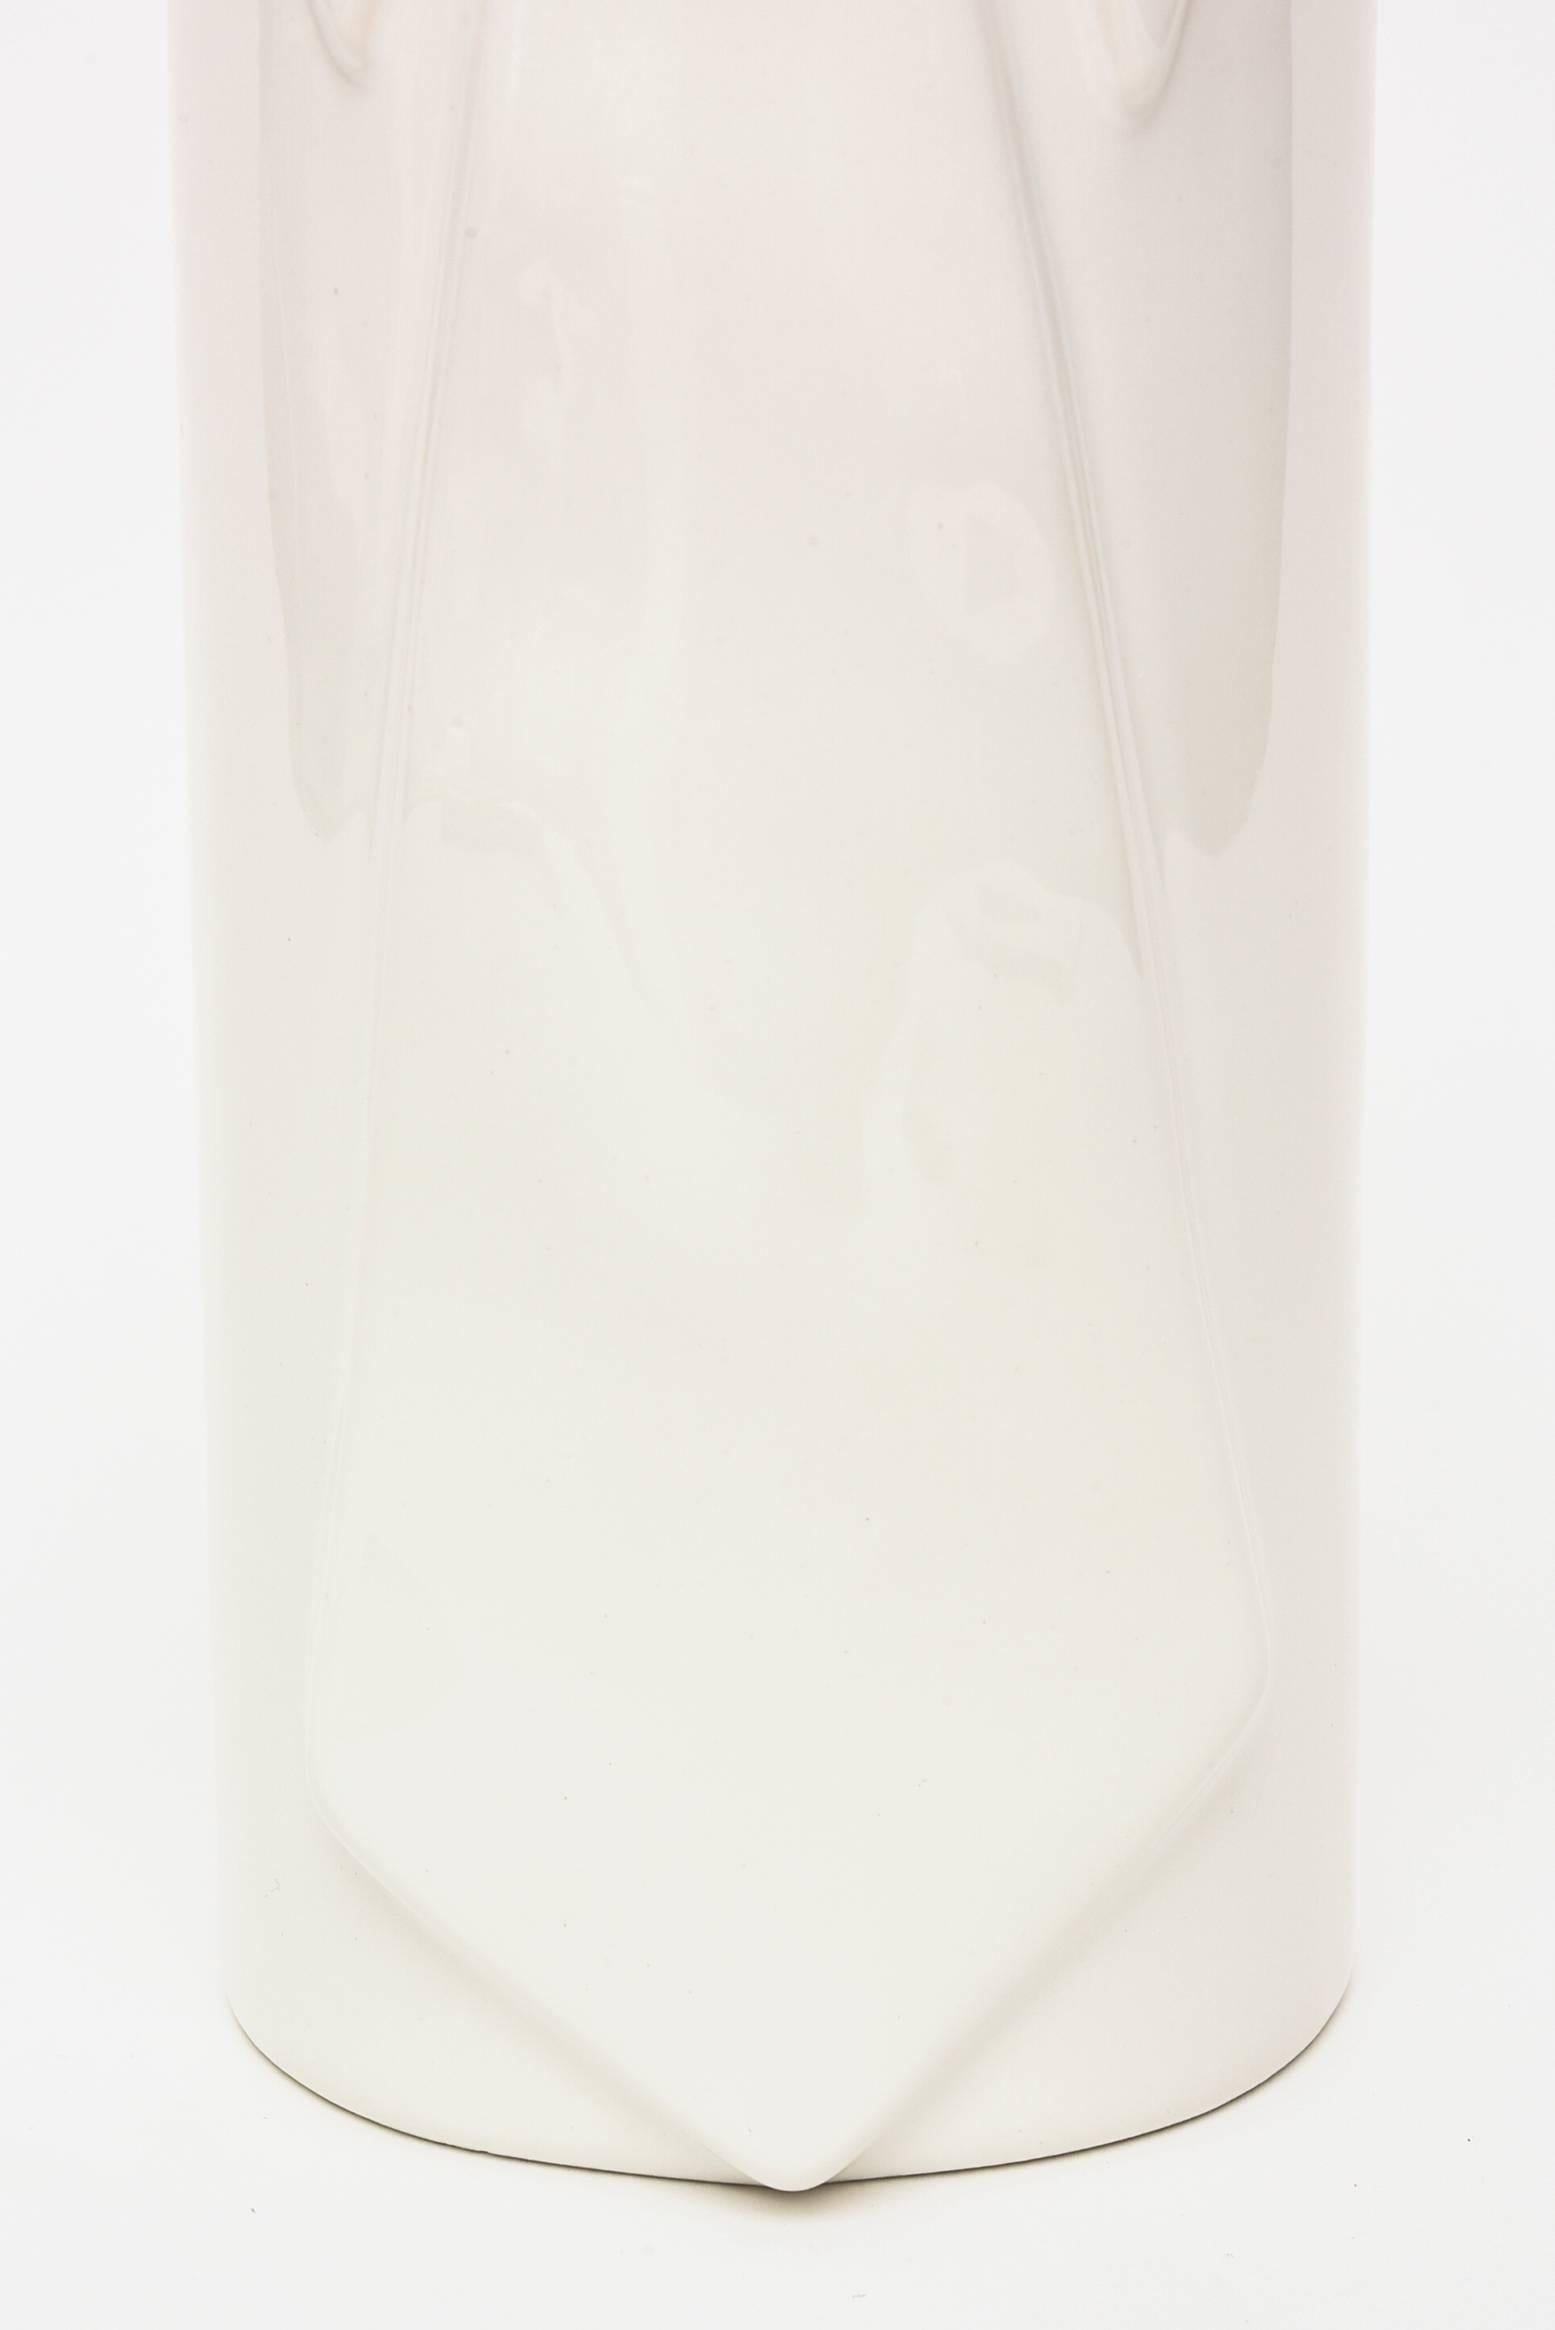 Modern Raymor Pop Art Off-White Gazed Ceramic Vase Italian Vintage For Sale